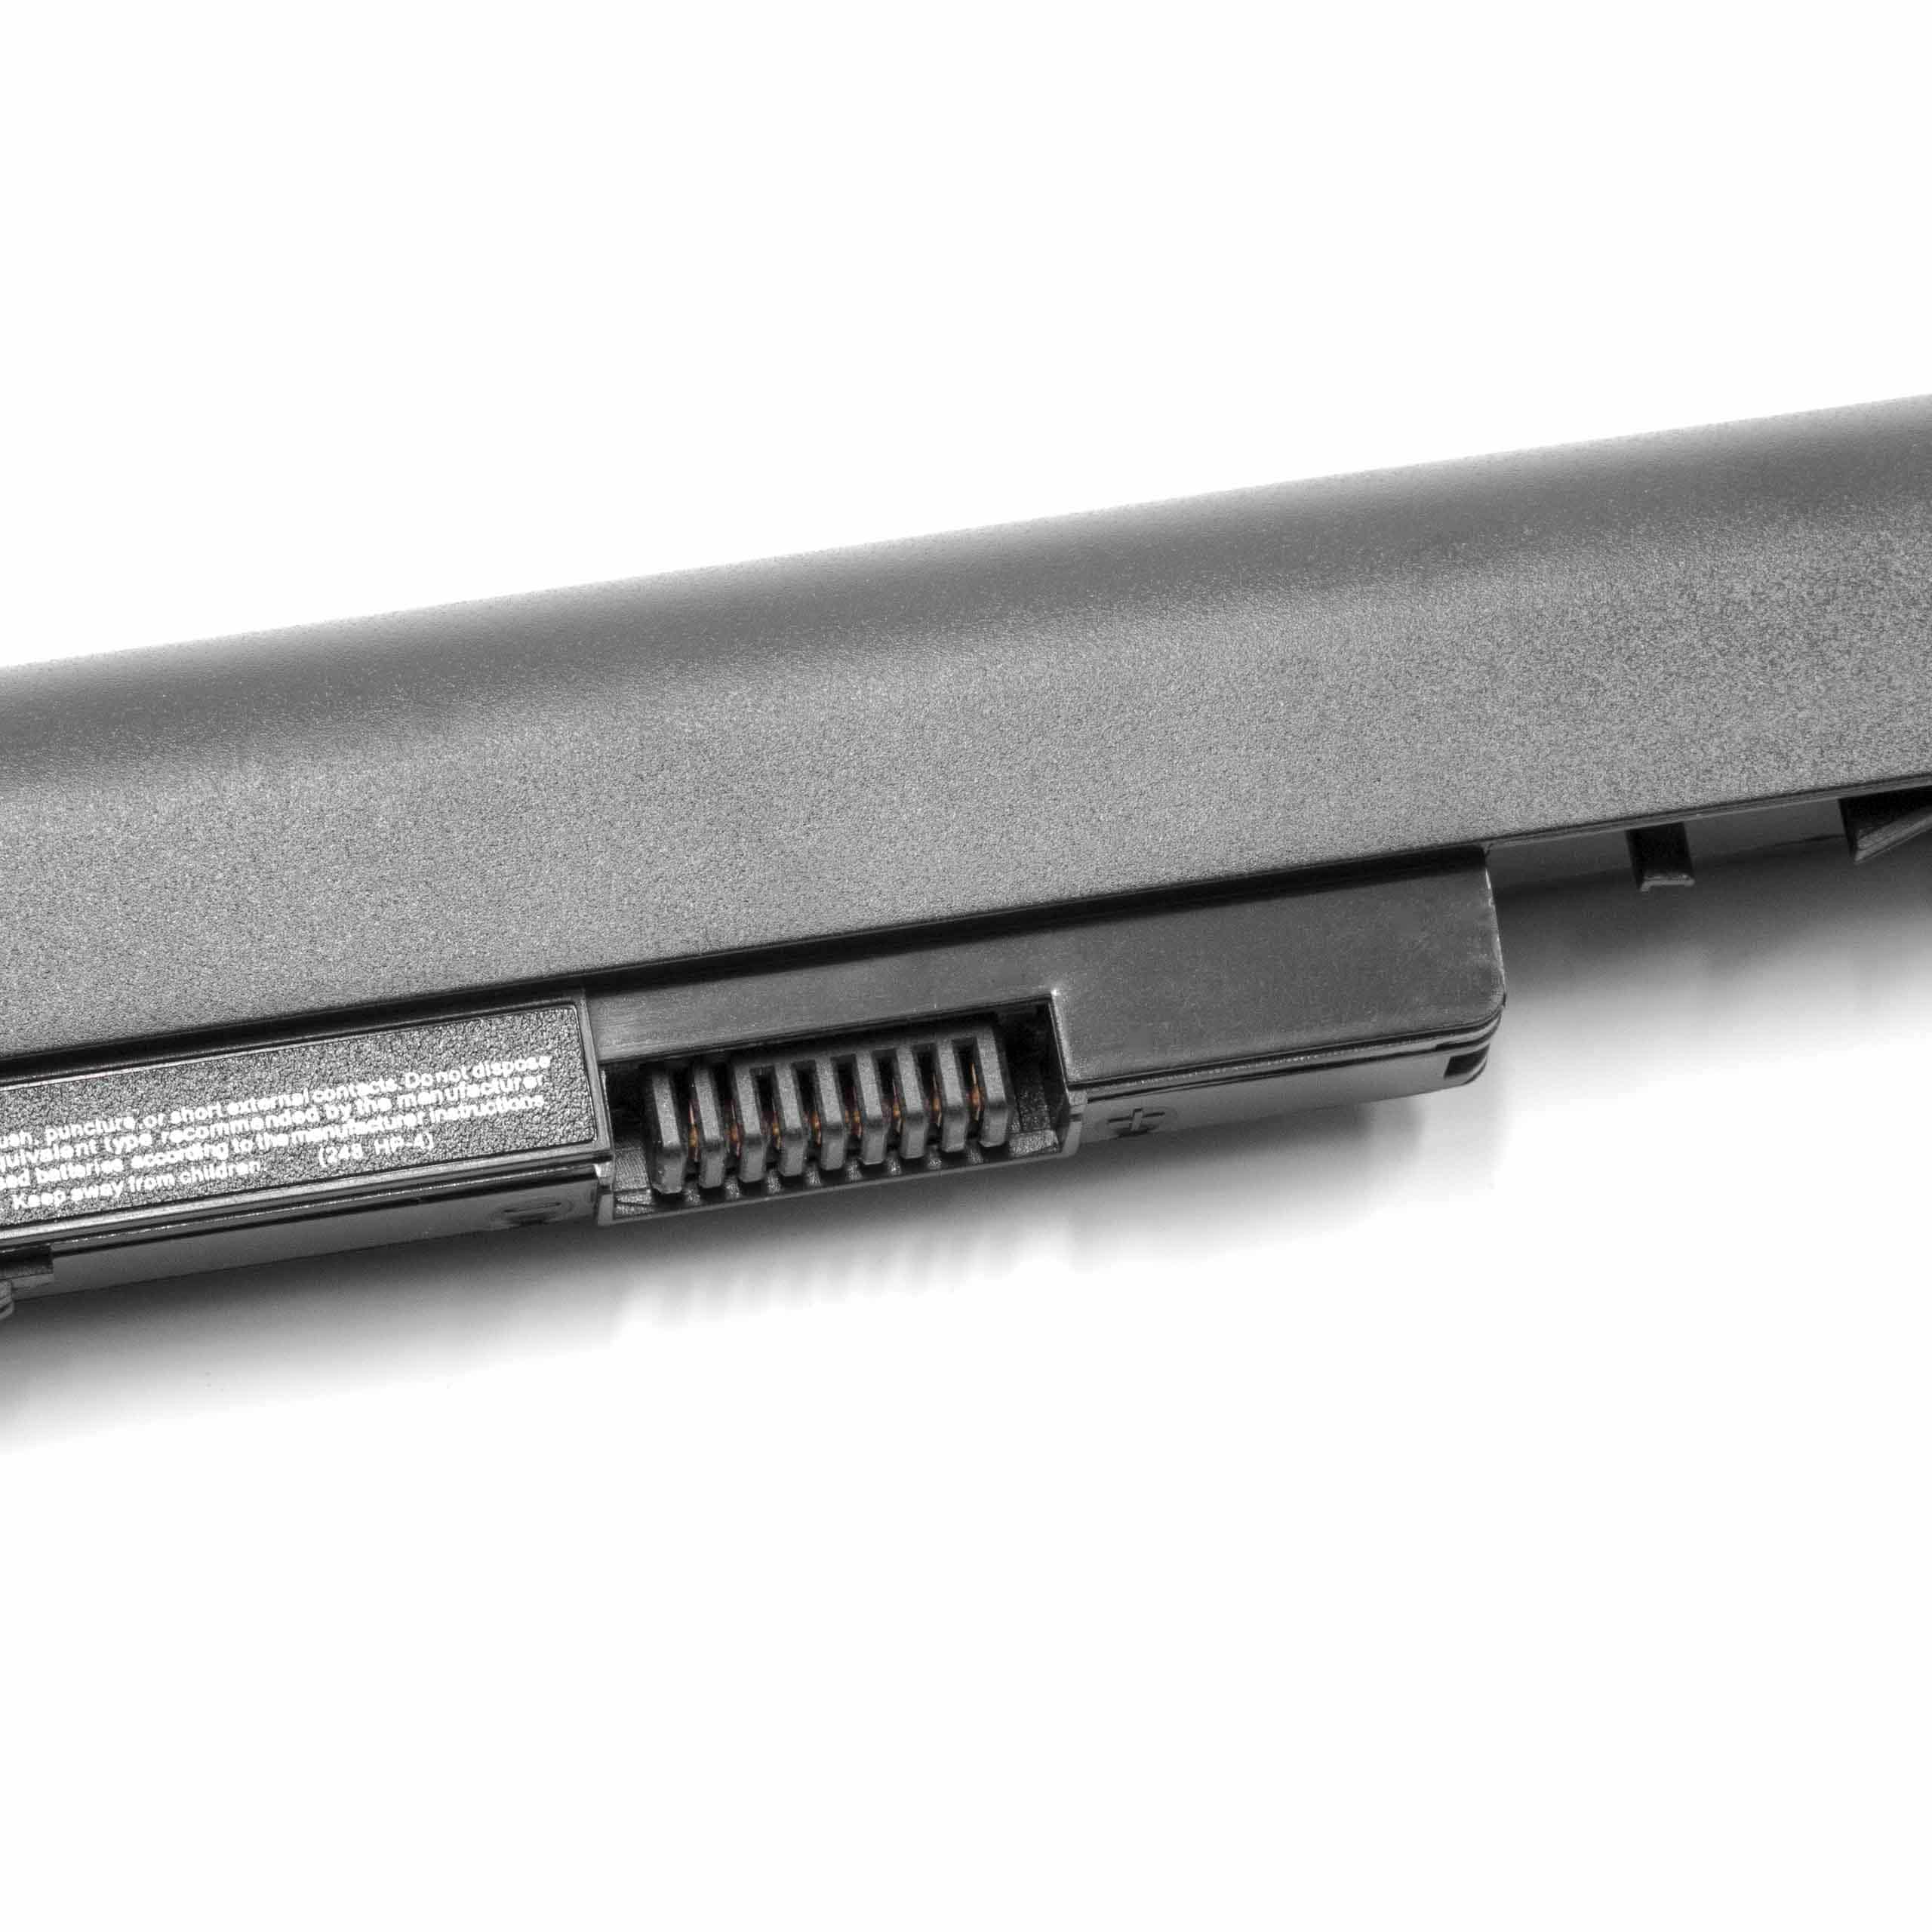 Batterie remplace HP 728248-221, 728248-141, 728248-121 pour ordinateur portable - 2600mAh 14,8V Li-ion, noir